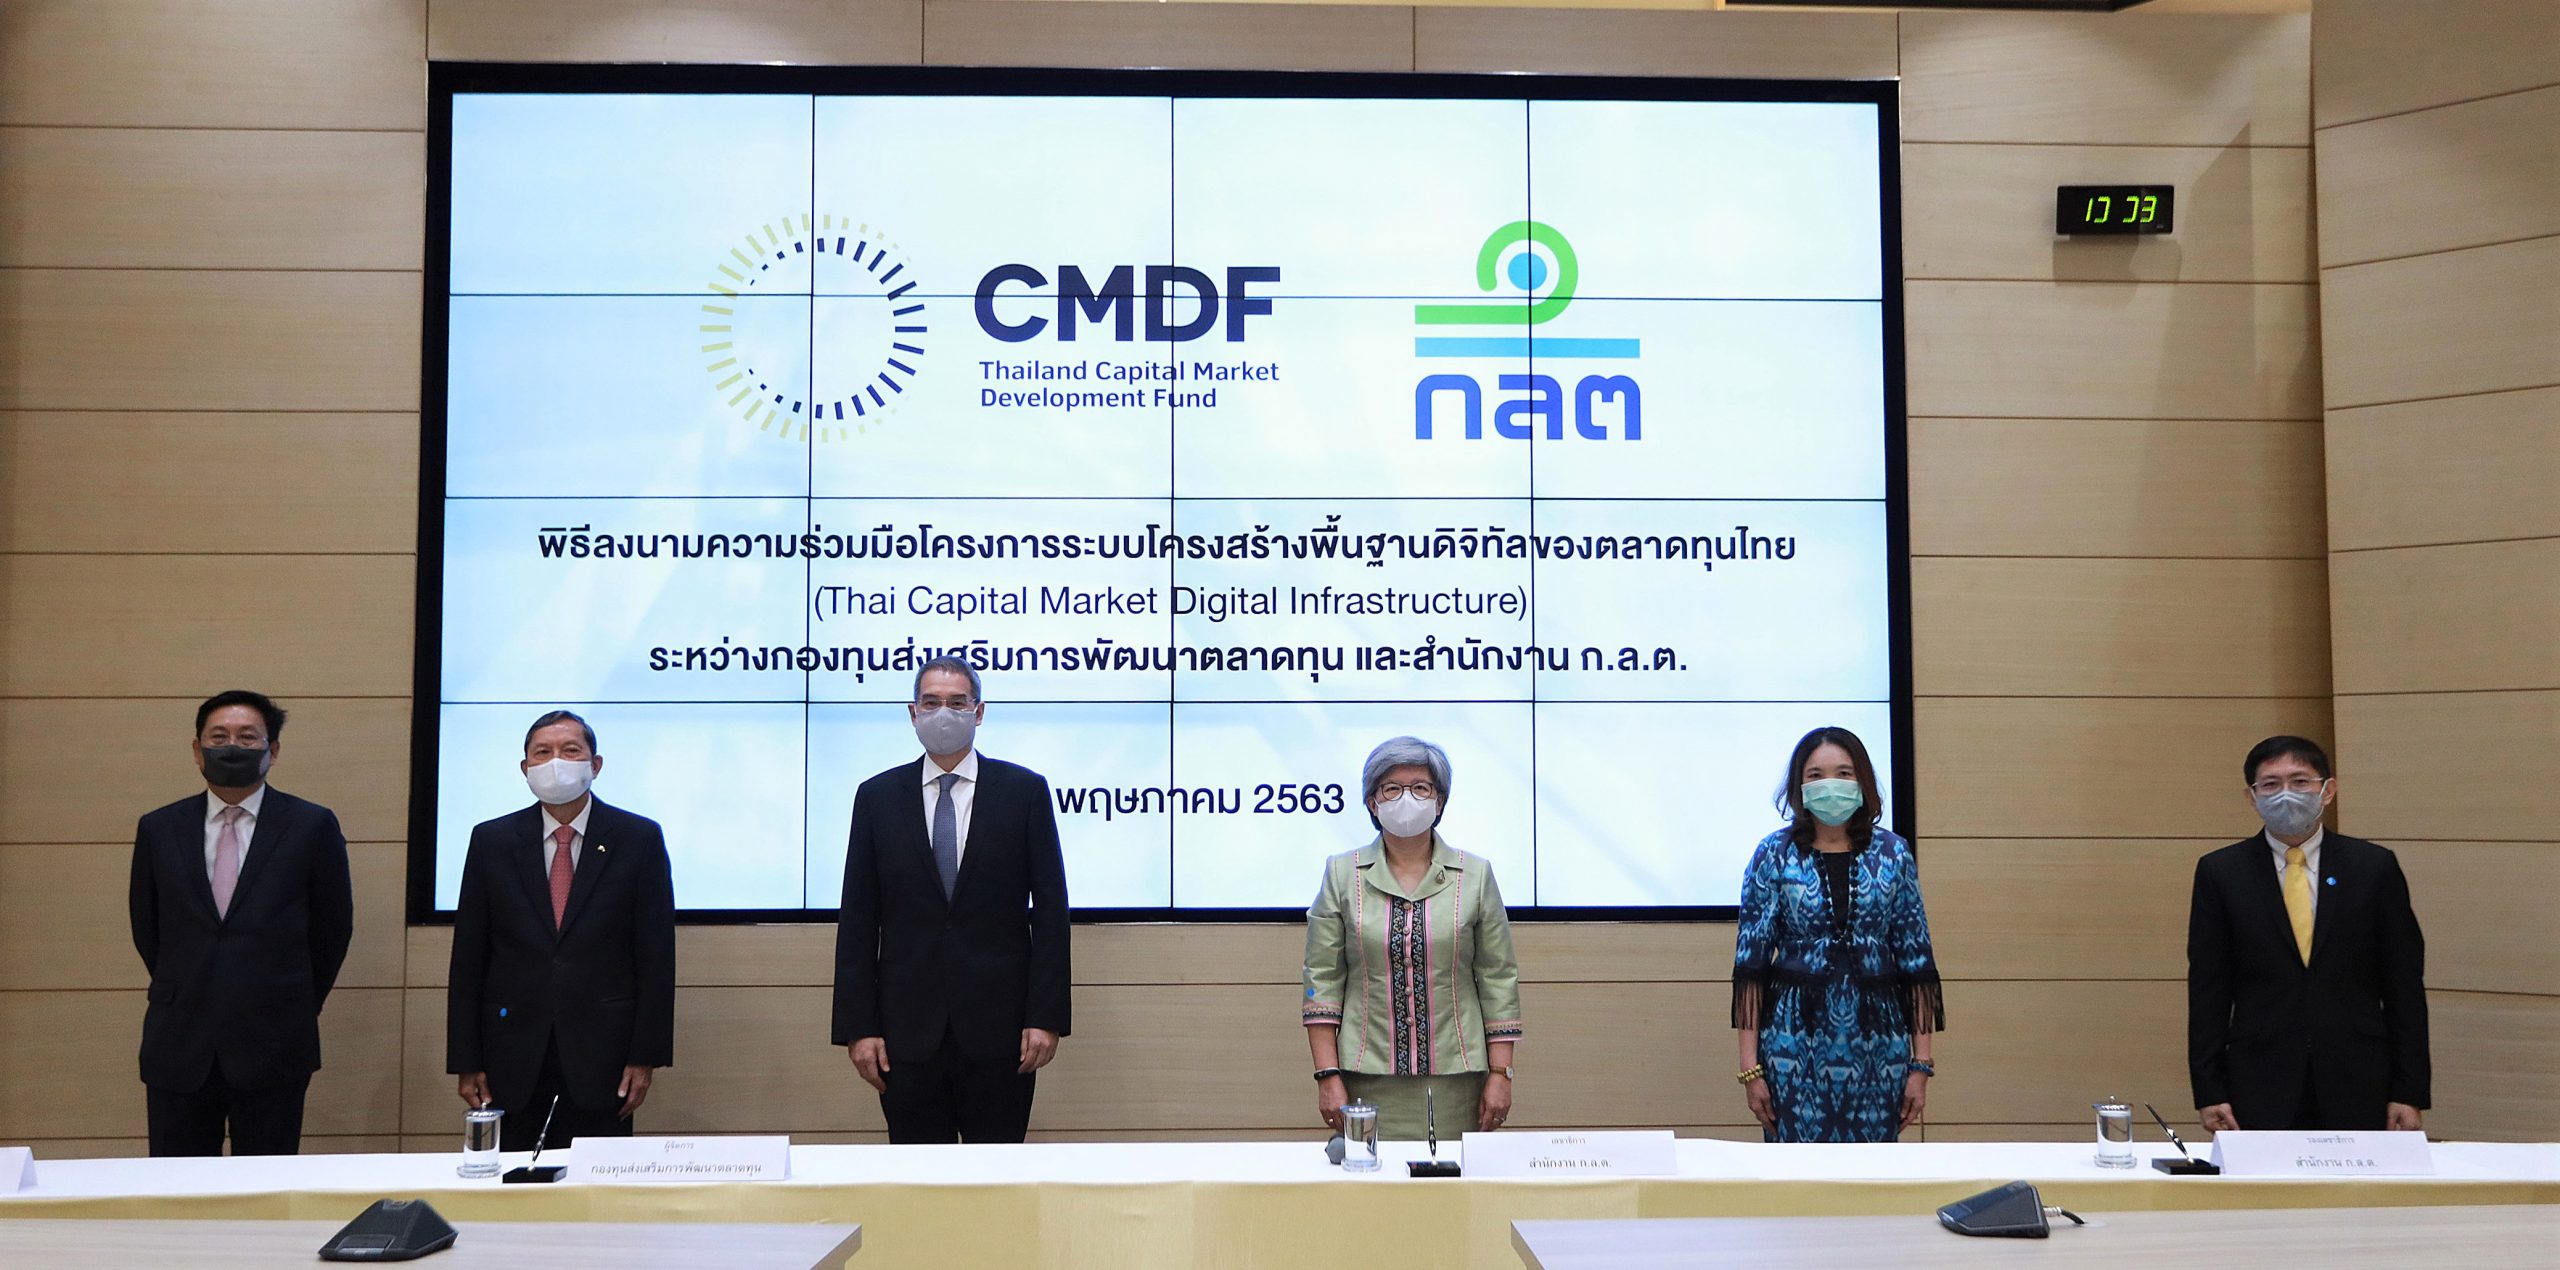 CMDF - ก.ล.ต. ลงนาม MOU สนับสนุนโครงการระบบโครงสร้างพื้นฐานดิจิทัลของตลาดทุนไทย